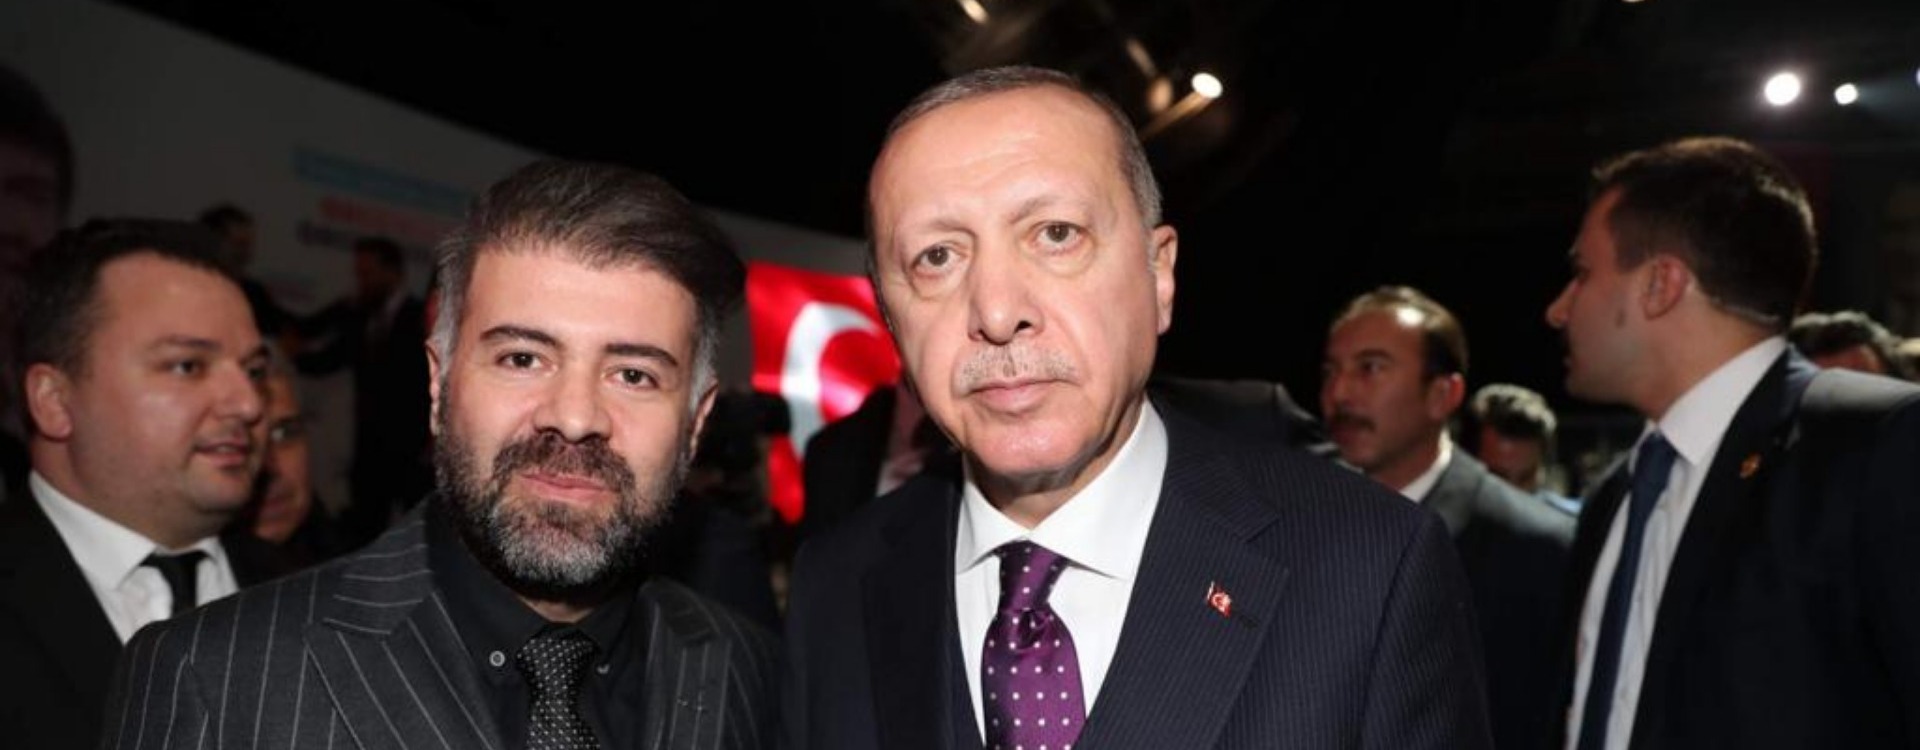 Boğaçhan Göksu, Erdoğan ile MÜSİAD Antalya Vizyonunu paylaştı